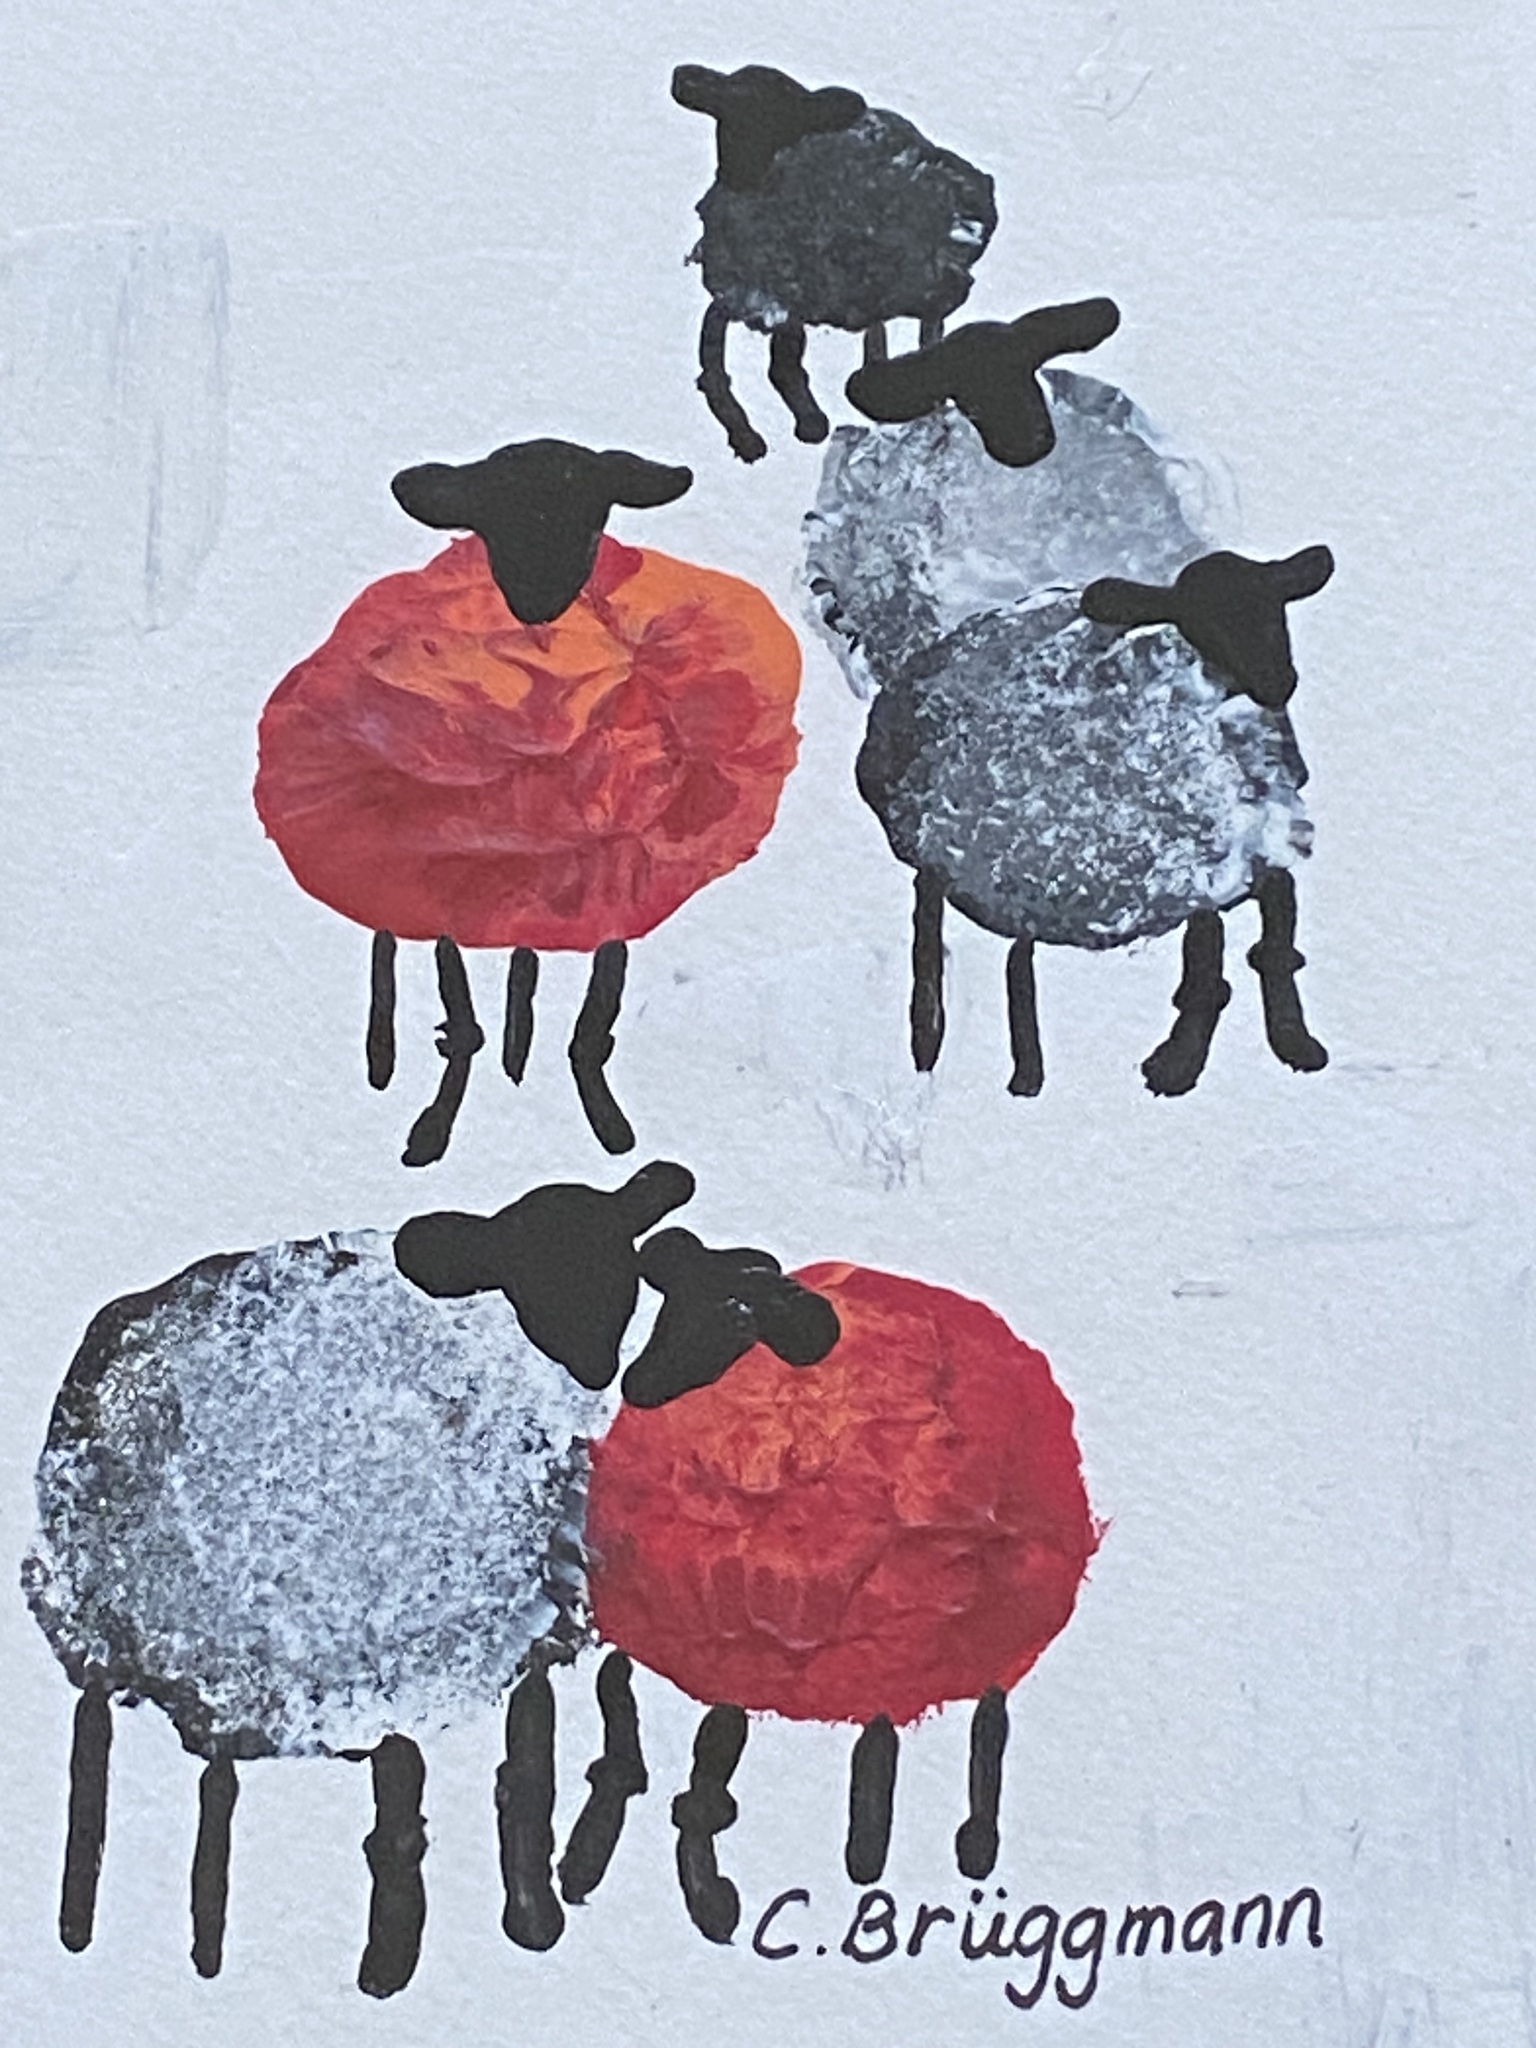 Gotlandslamm i kärlekens röda färg. Denna fårtavla och andra designade fårsaker kan köpas online på cbruggmann.se